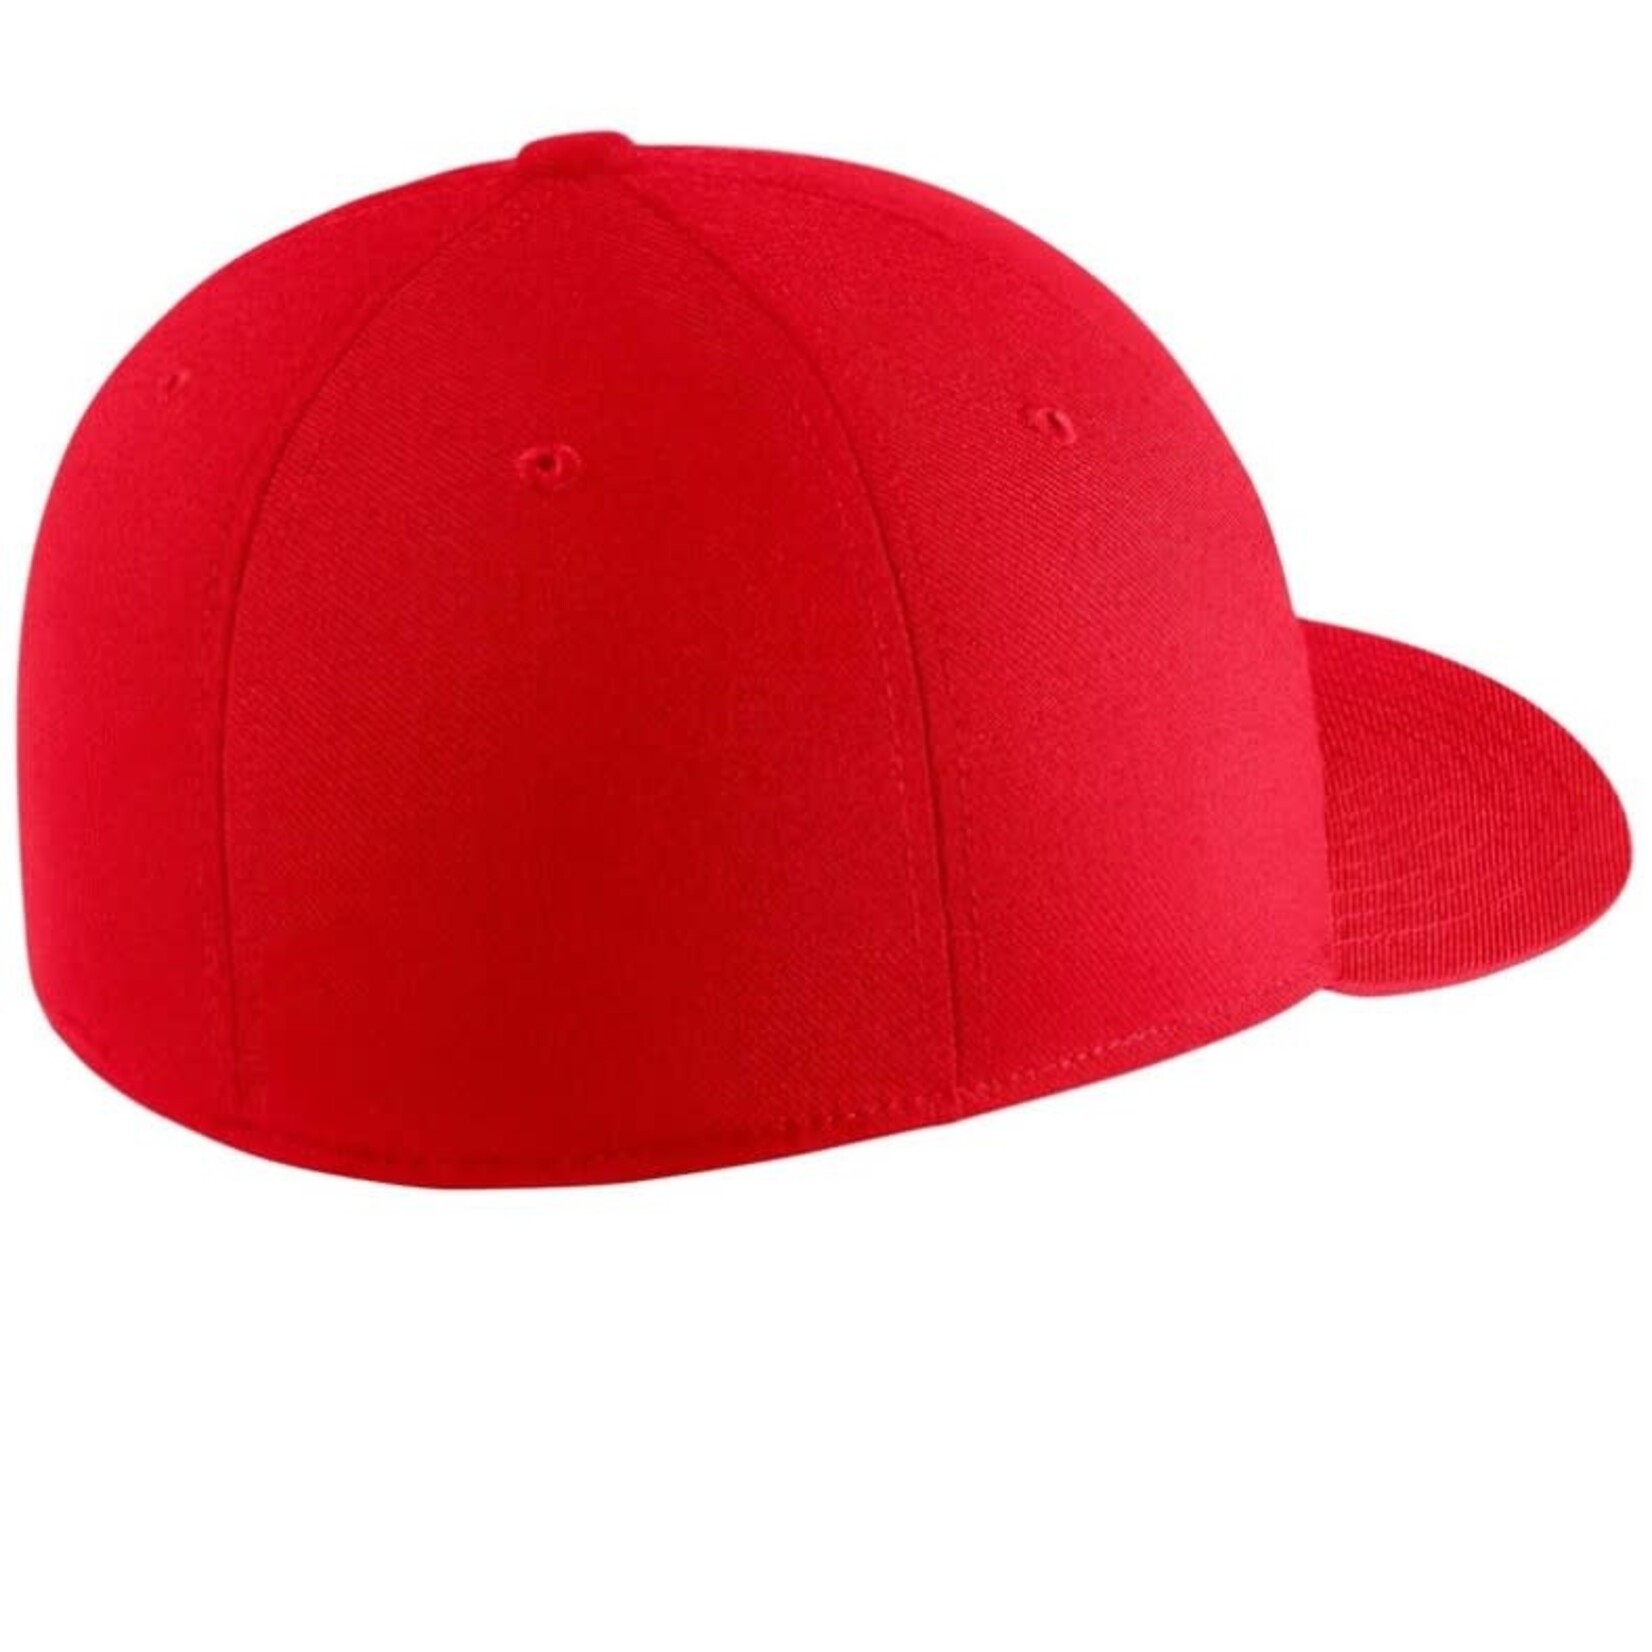 Nike Canada Soccer Red Swooshflex Cap